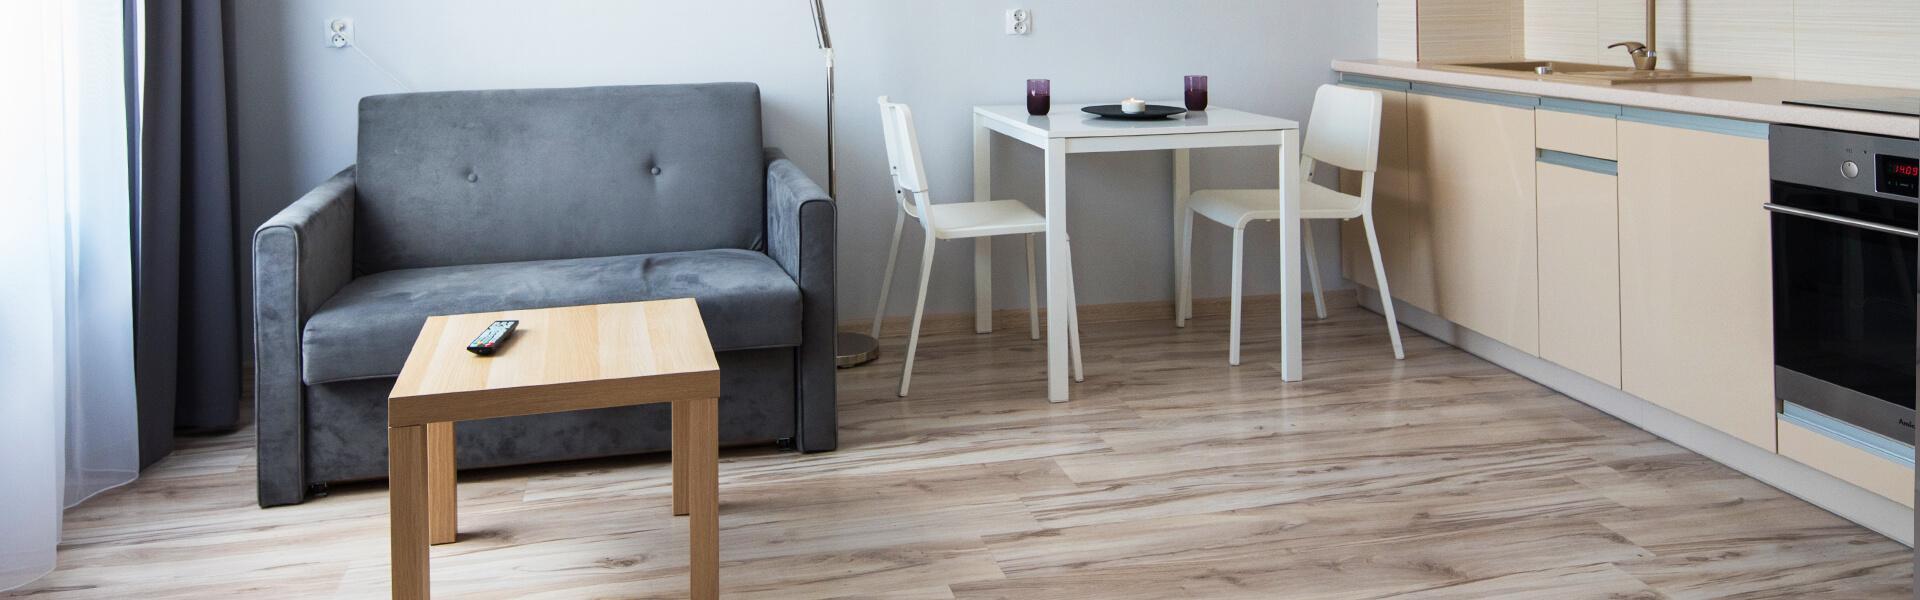 Slajd #1 Standard, kuchnia, fotel, stolik, krzesła